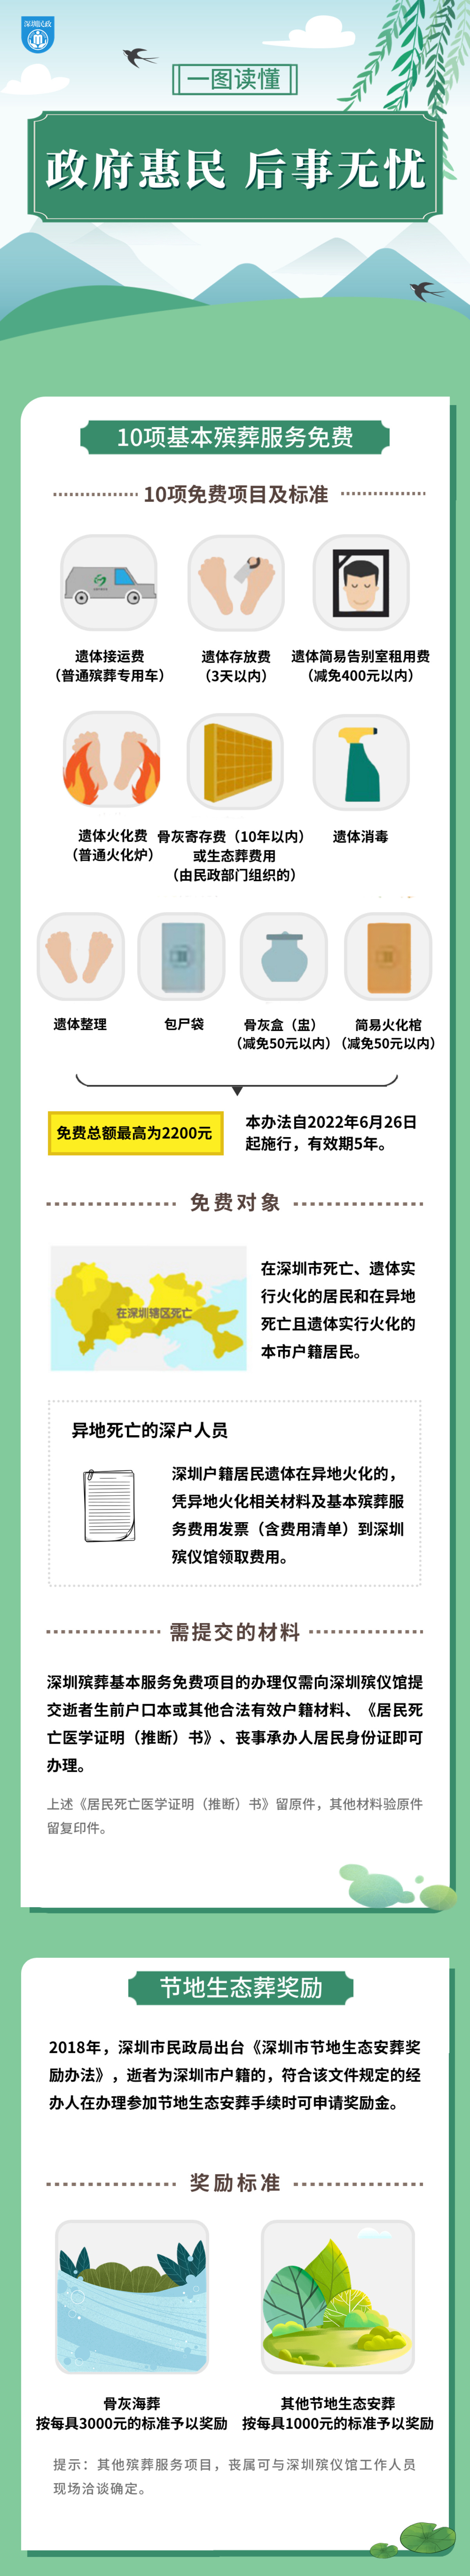 一图读懂 在深圳办“身后事” 的惠民政策